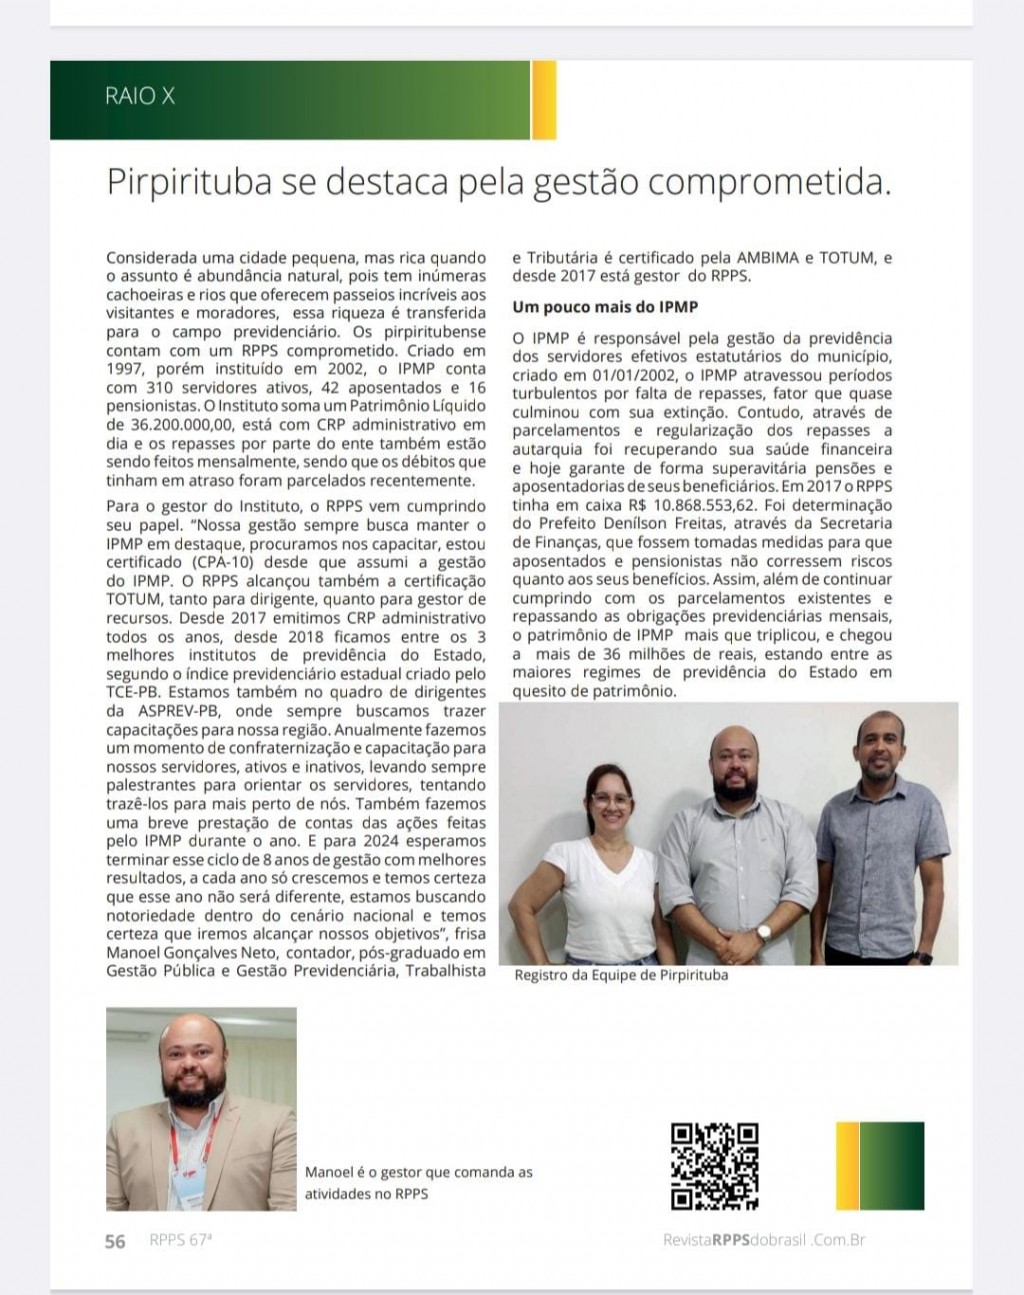 Pirpirituba é destaque em revista de circulação nacional em gestão previdenciária.